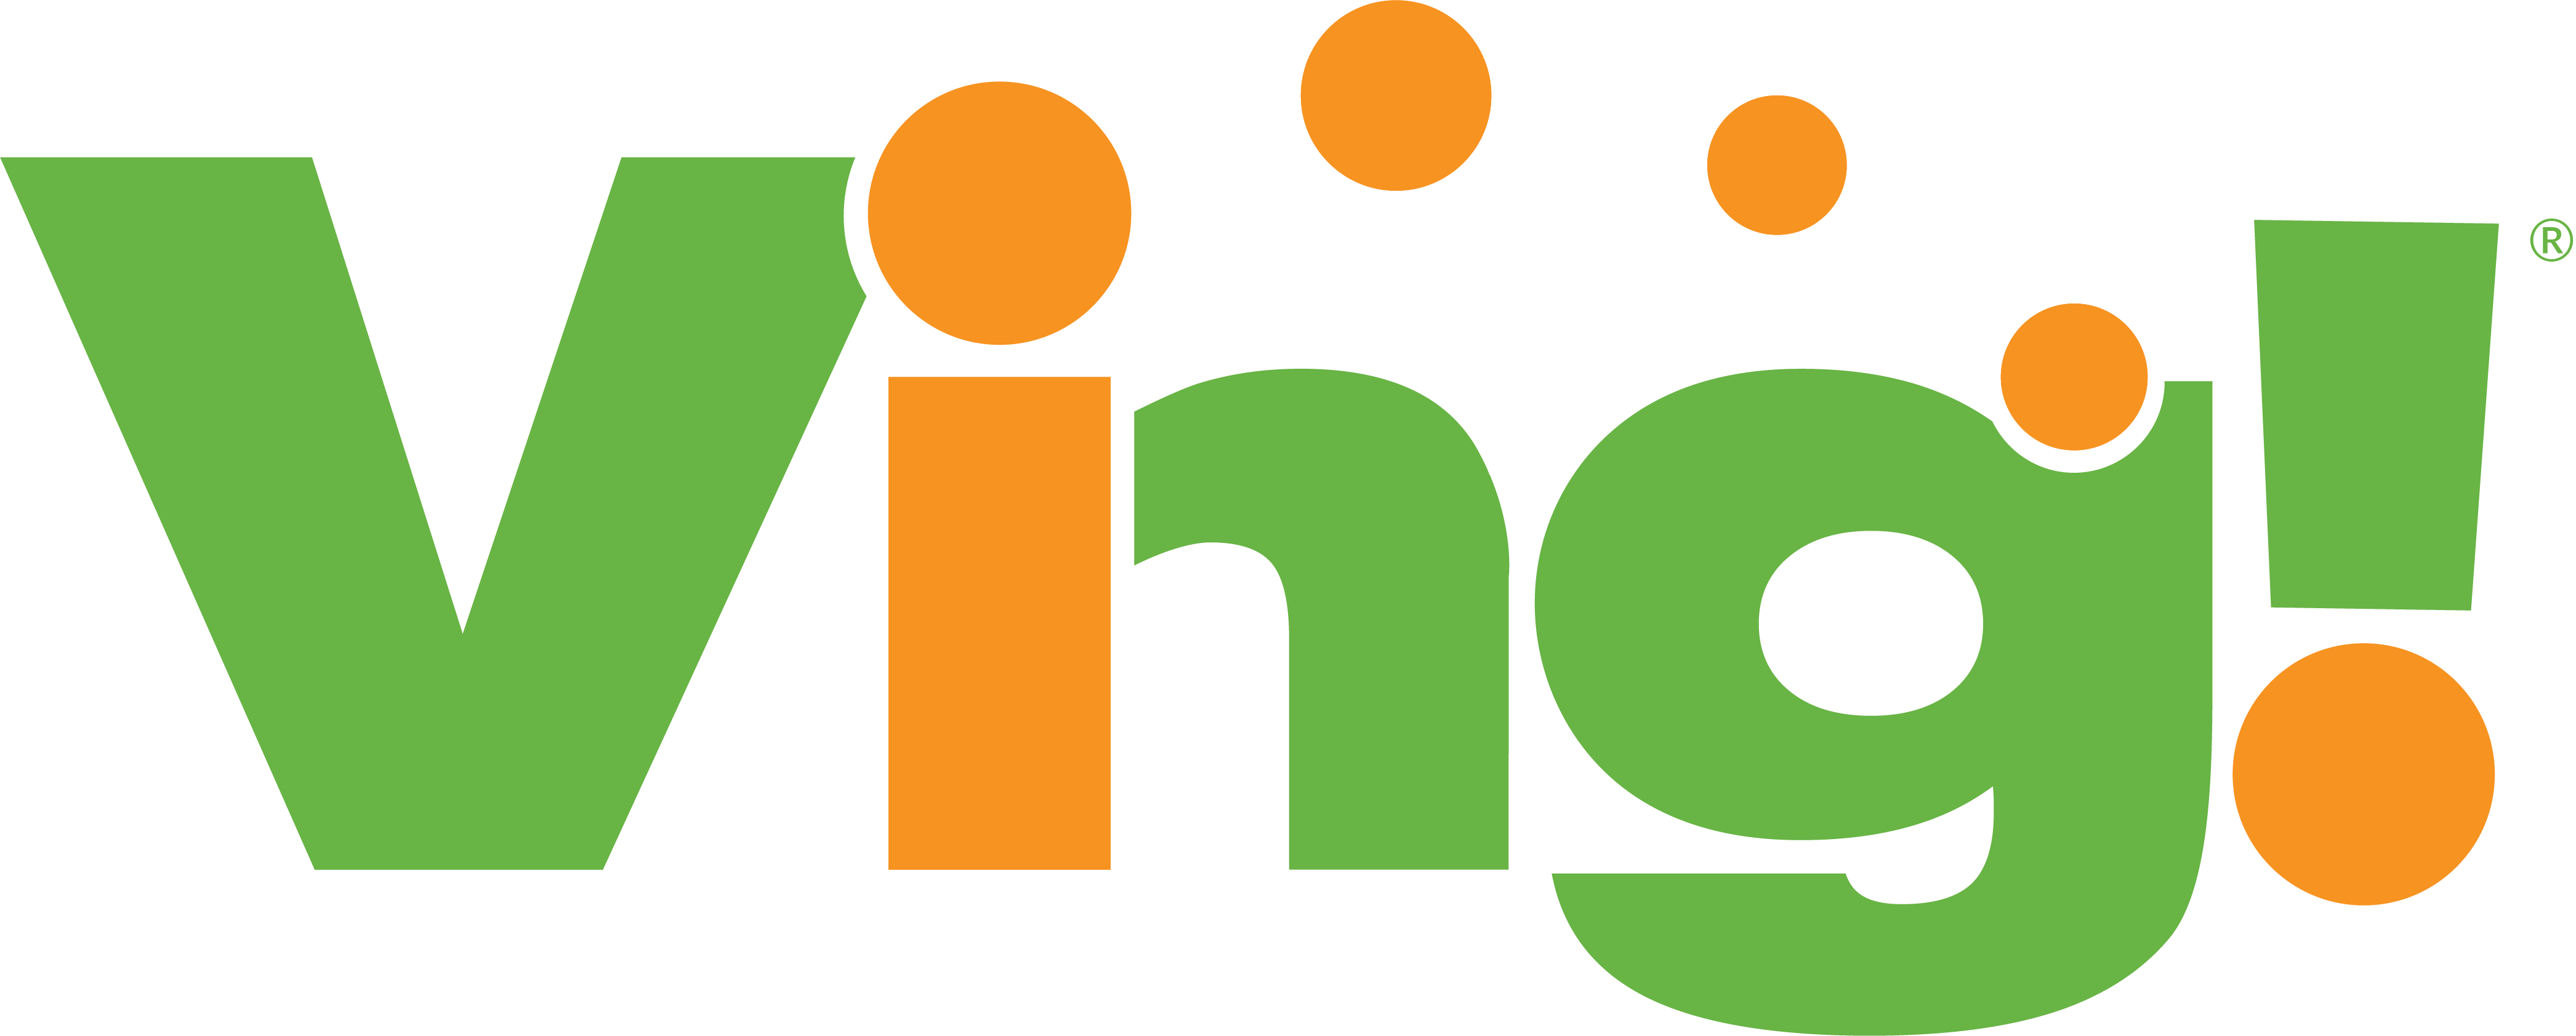 ving logo